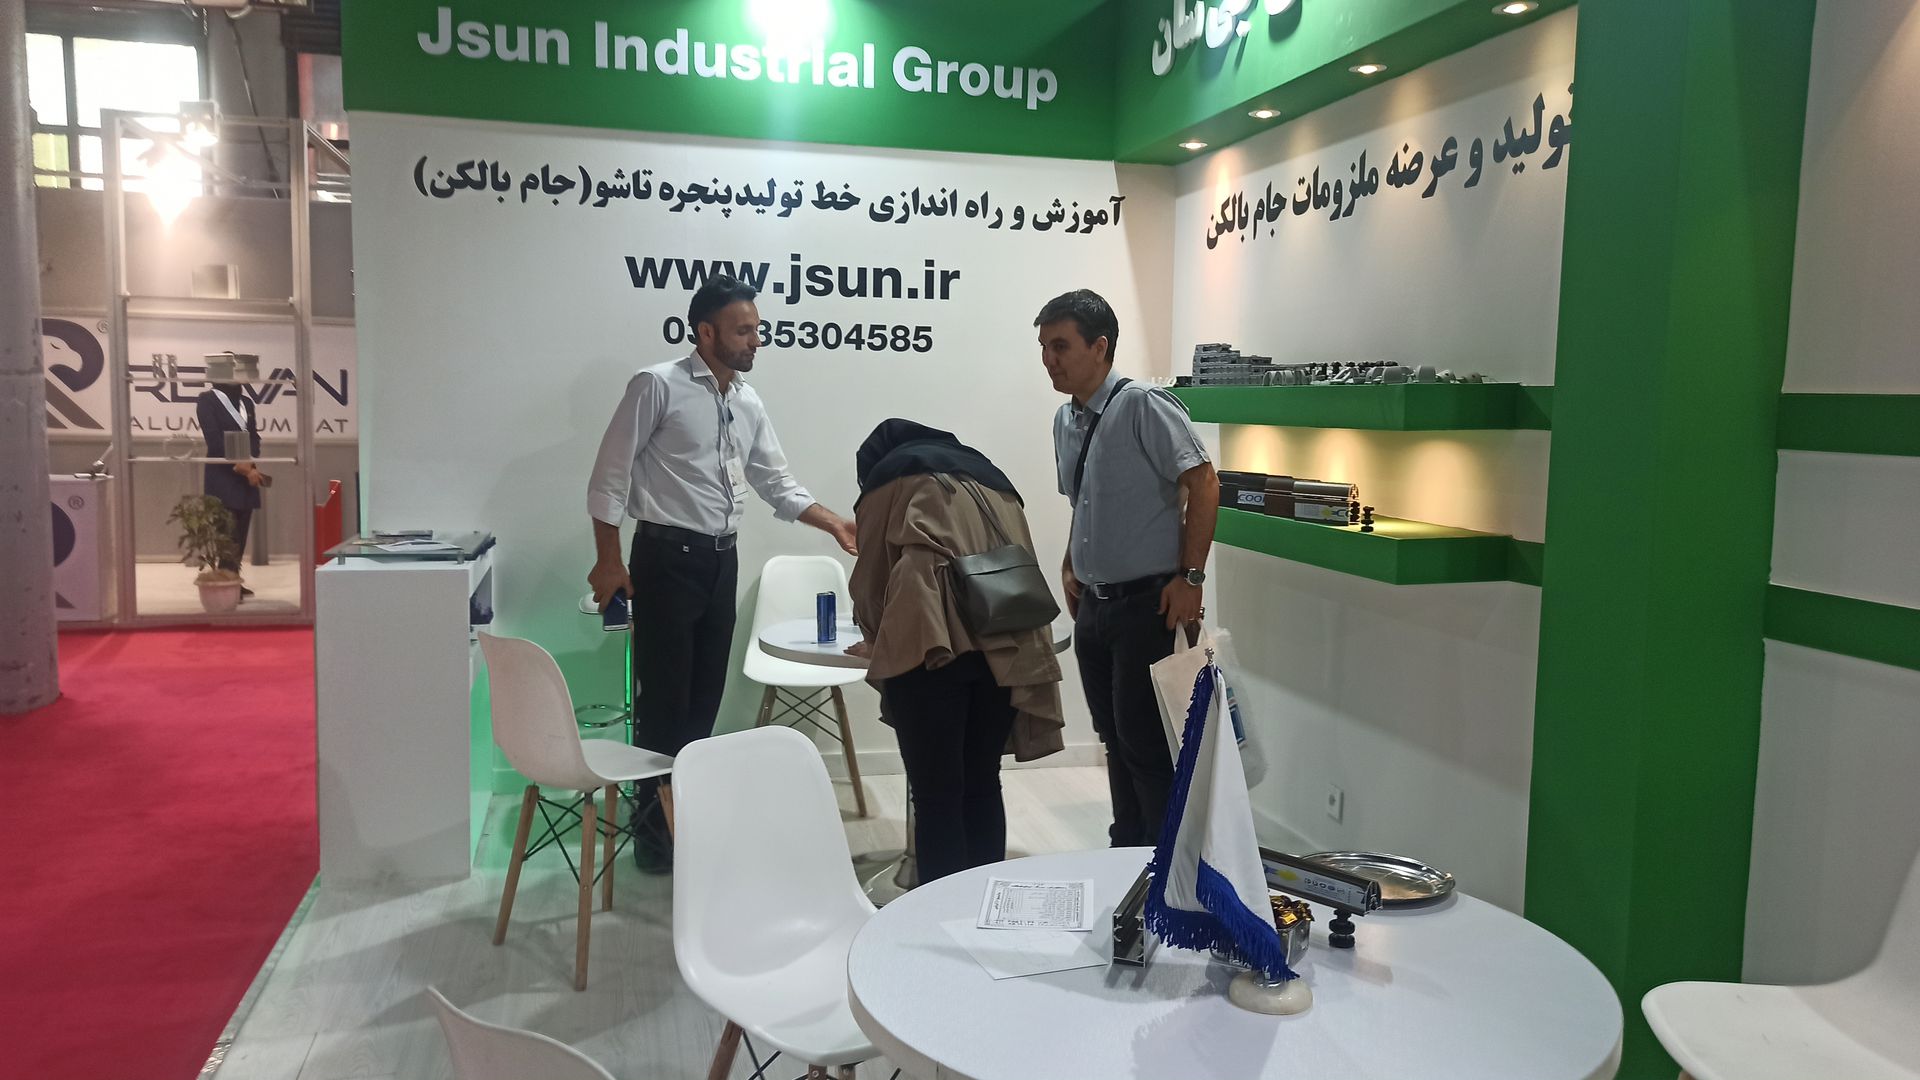 جی سان، تولید کننده ریل و یراق شیشه بالکن در نمایشگاه تهران حضور یافت